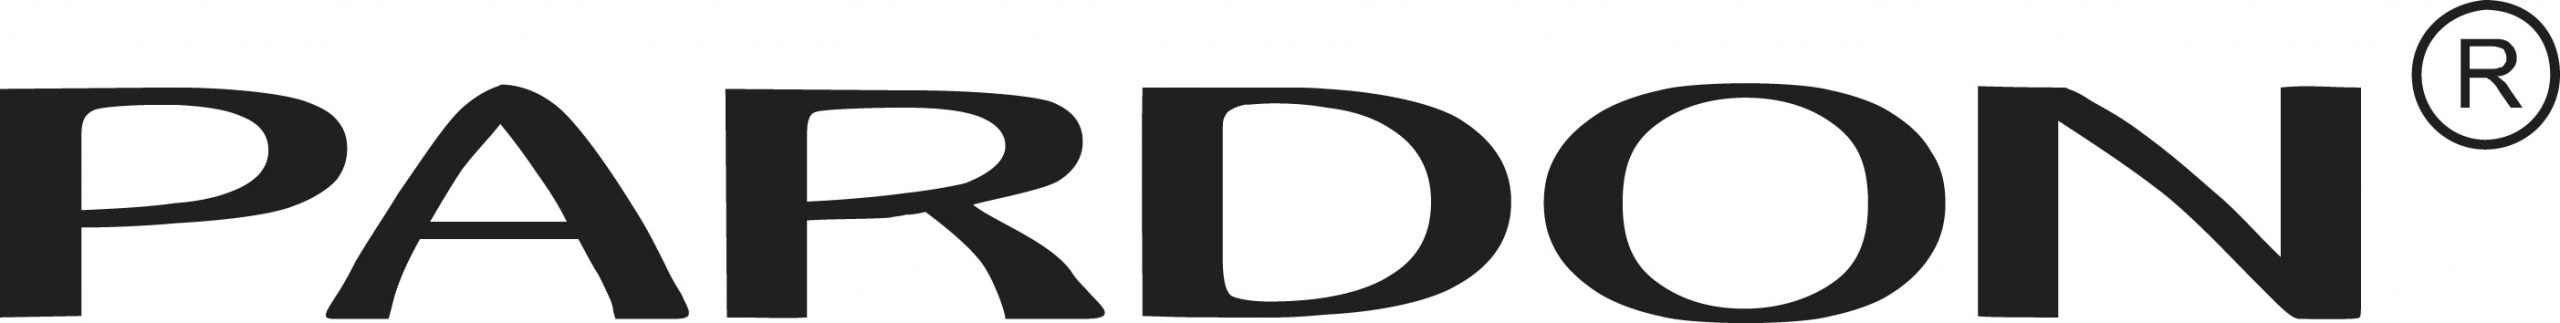 Pardon 10 års logo